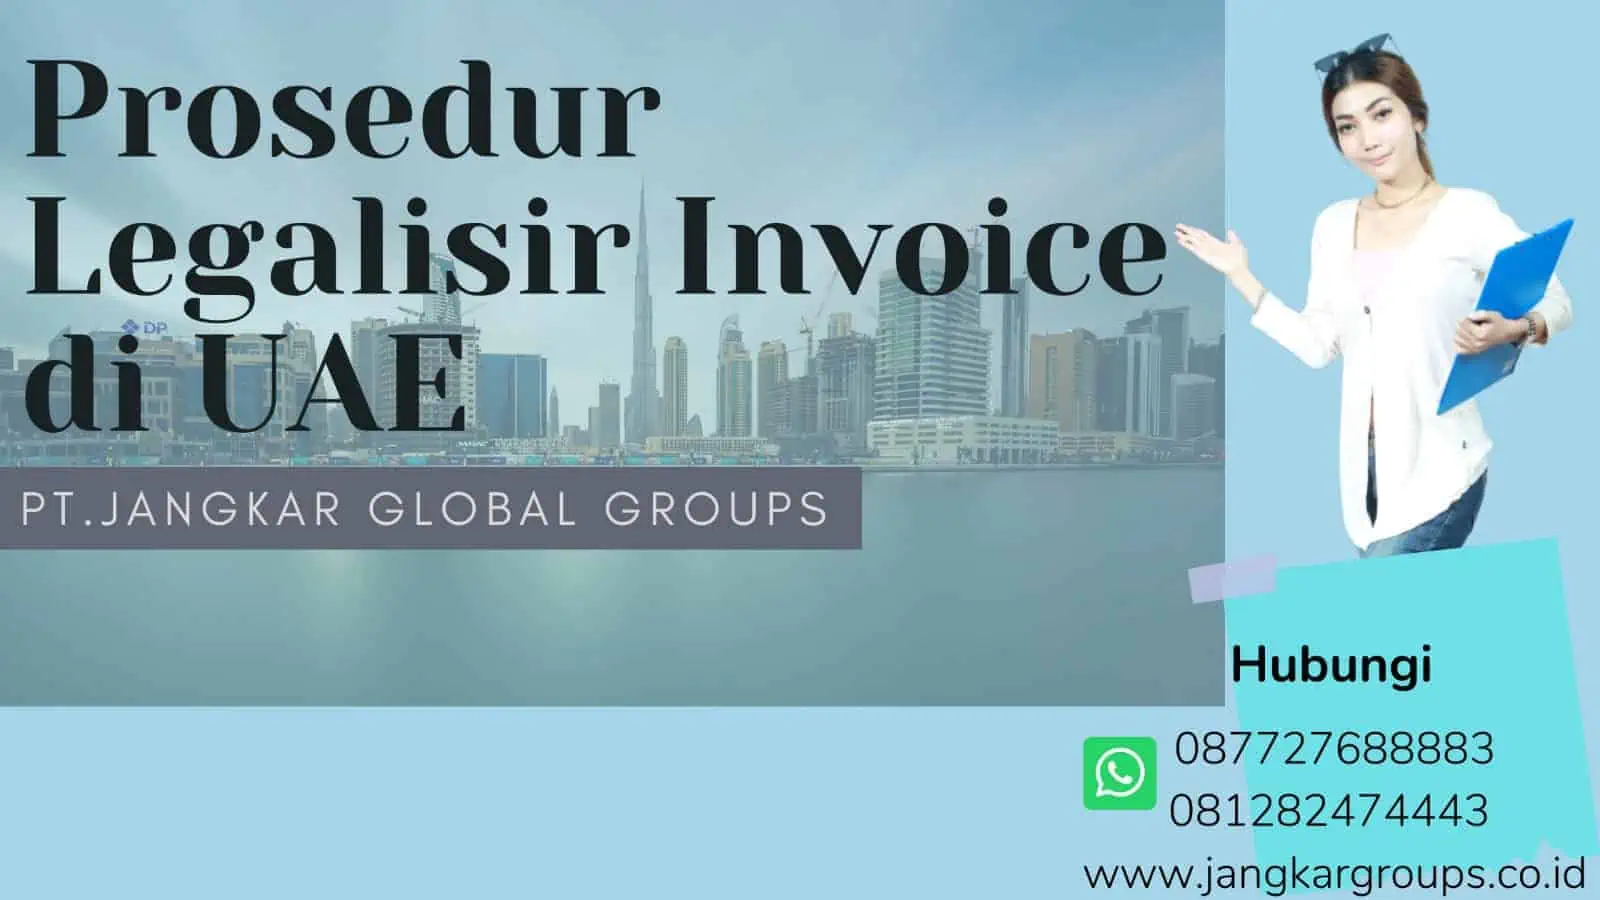 Prosedur Legalisir Invoice di UAE